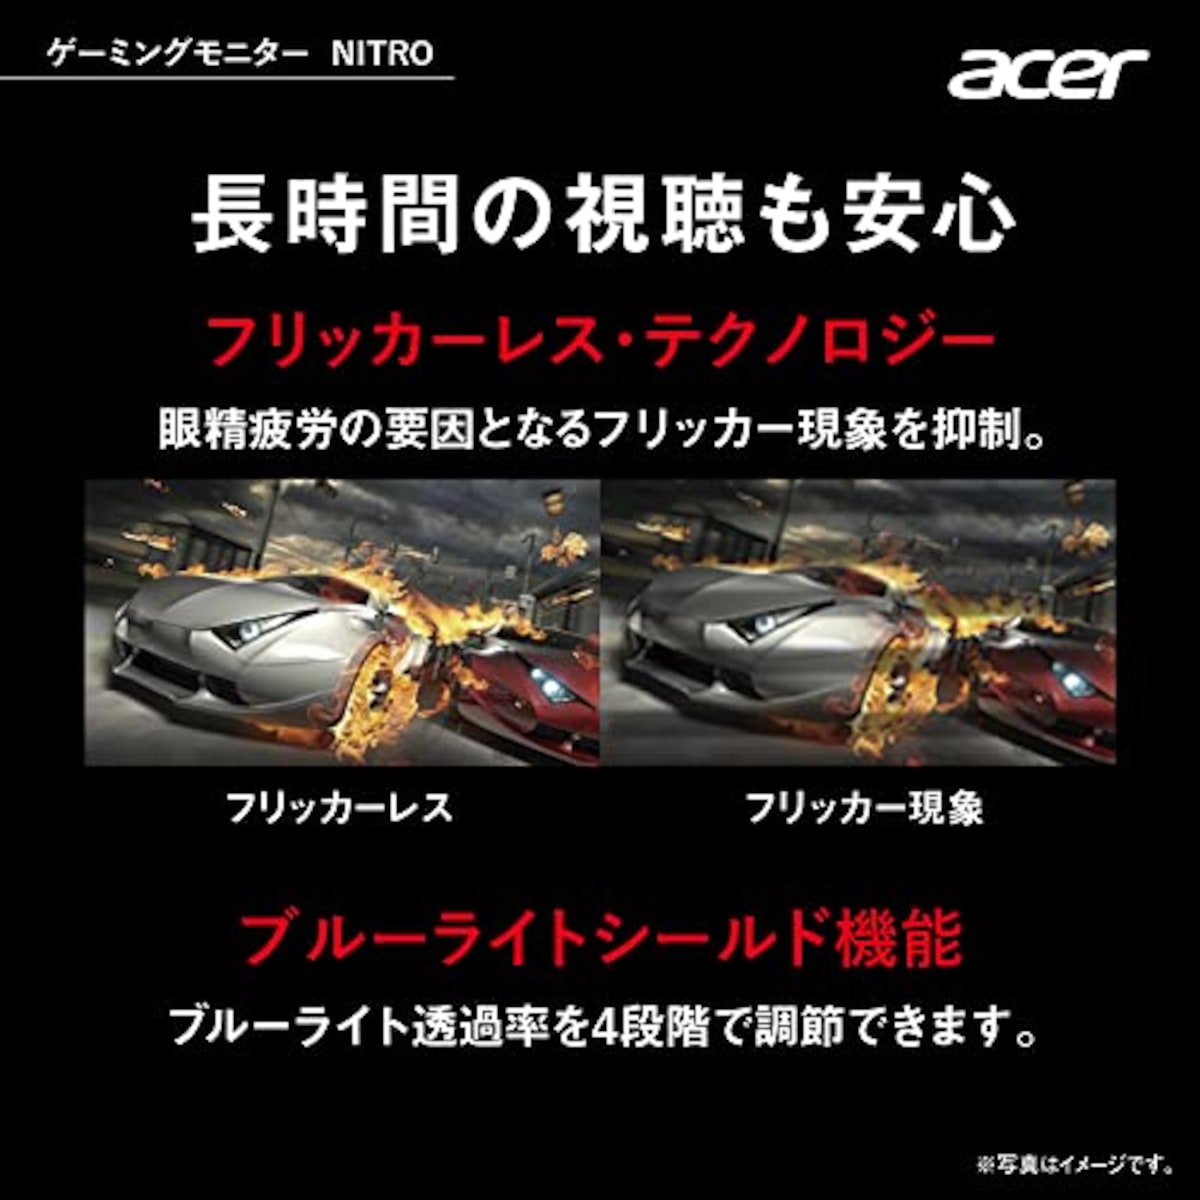  日本エイサー 【Amazon.co.jp限定】 Acer ゲーミングモニター Nitro KG241YHbmiix 23.8インチ VA 非光沢 フルHD 100Hz 1ms(VRB) HDMI ミニD-Sub15 VESAマウント対応 スピーカー内蔵 ヘッドホン端子 AMD FreeSync画像5 